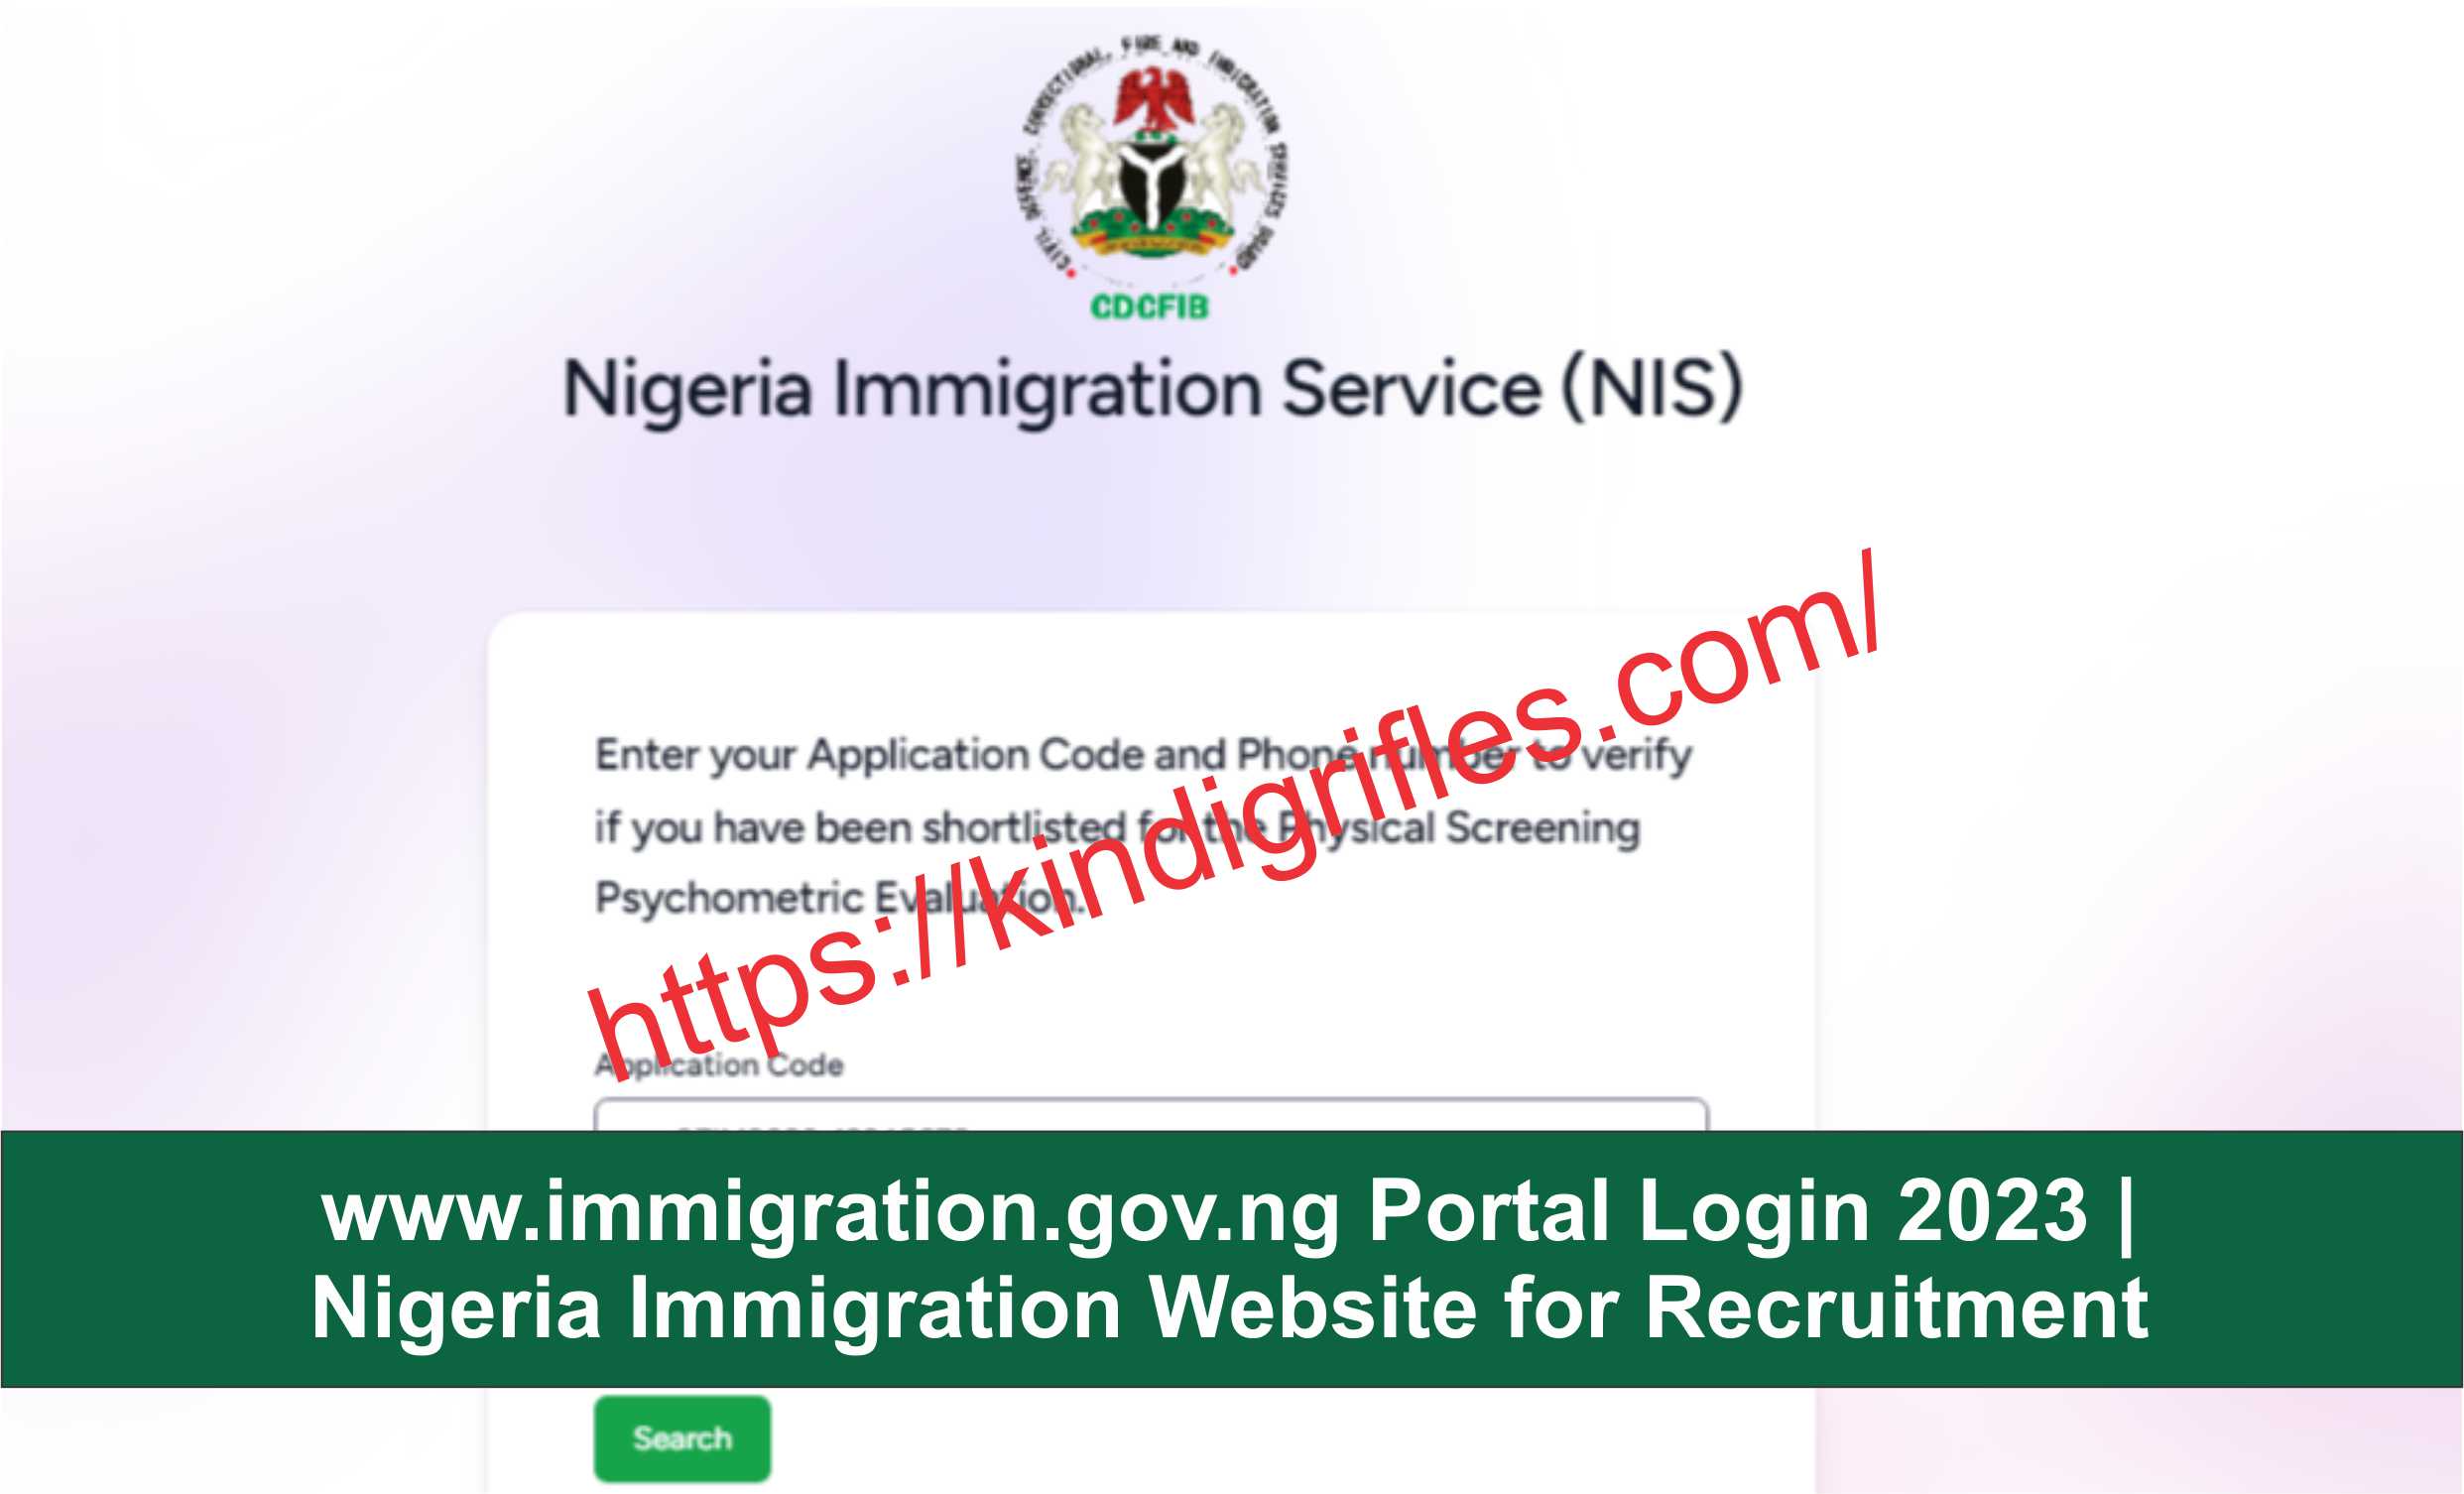 www.immigration.gov.ng Portal Login